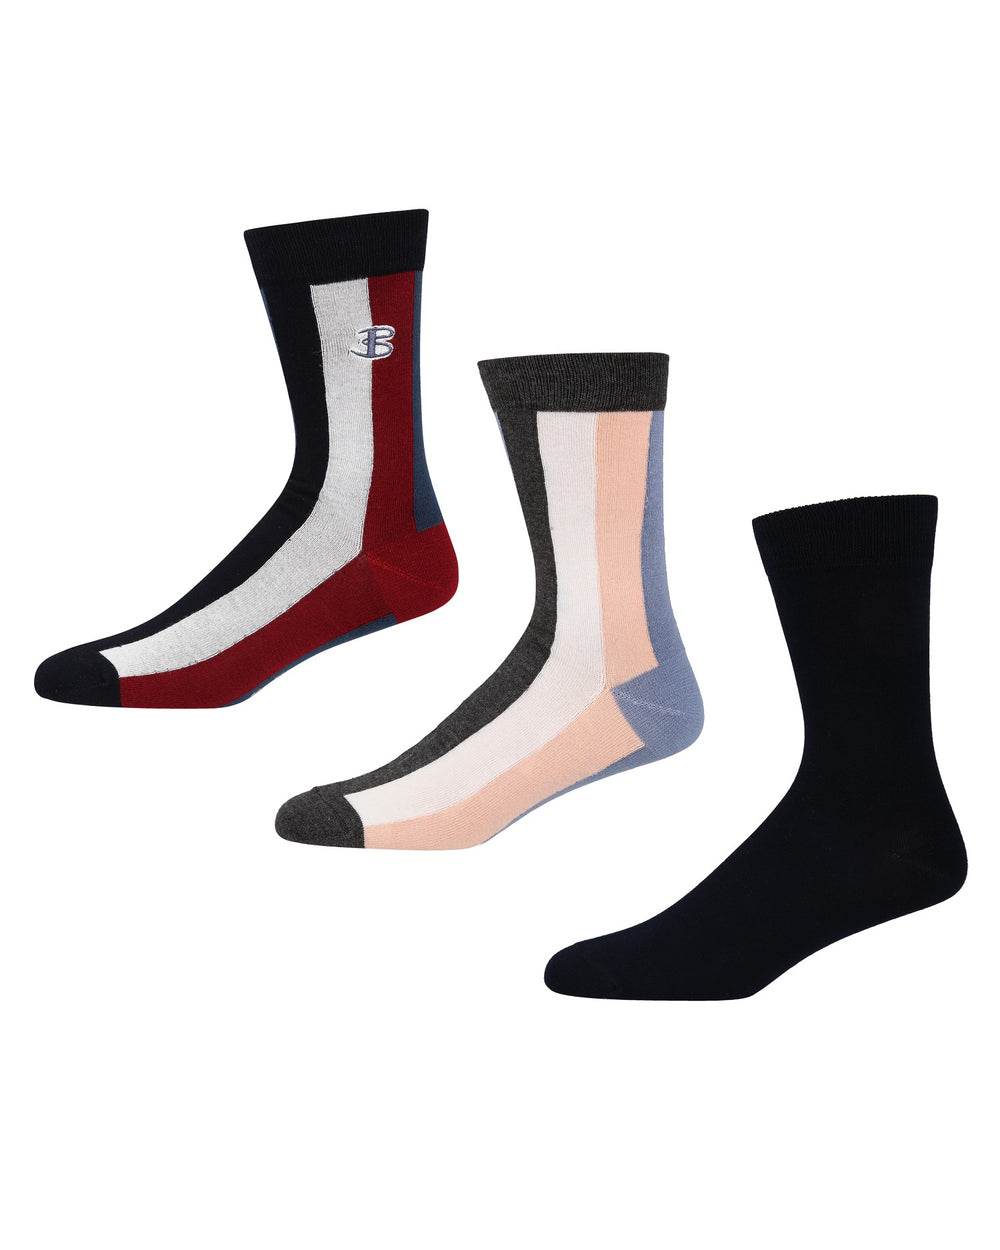 Snap Logic Men's 3-Pack Socks - Navy Stripes